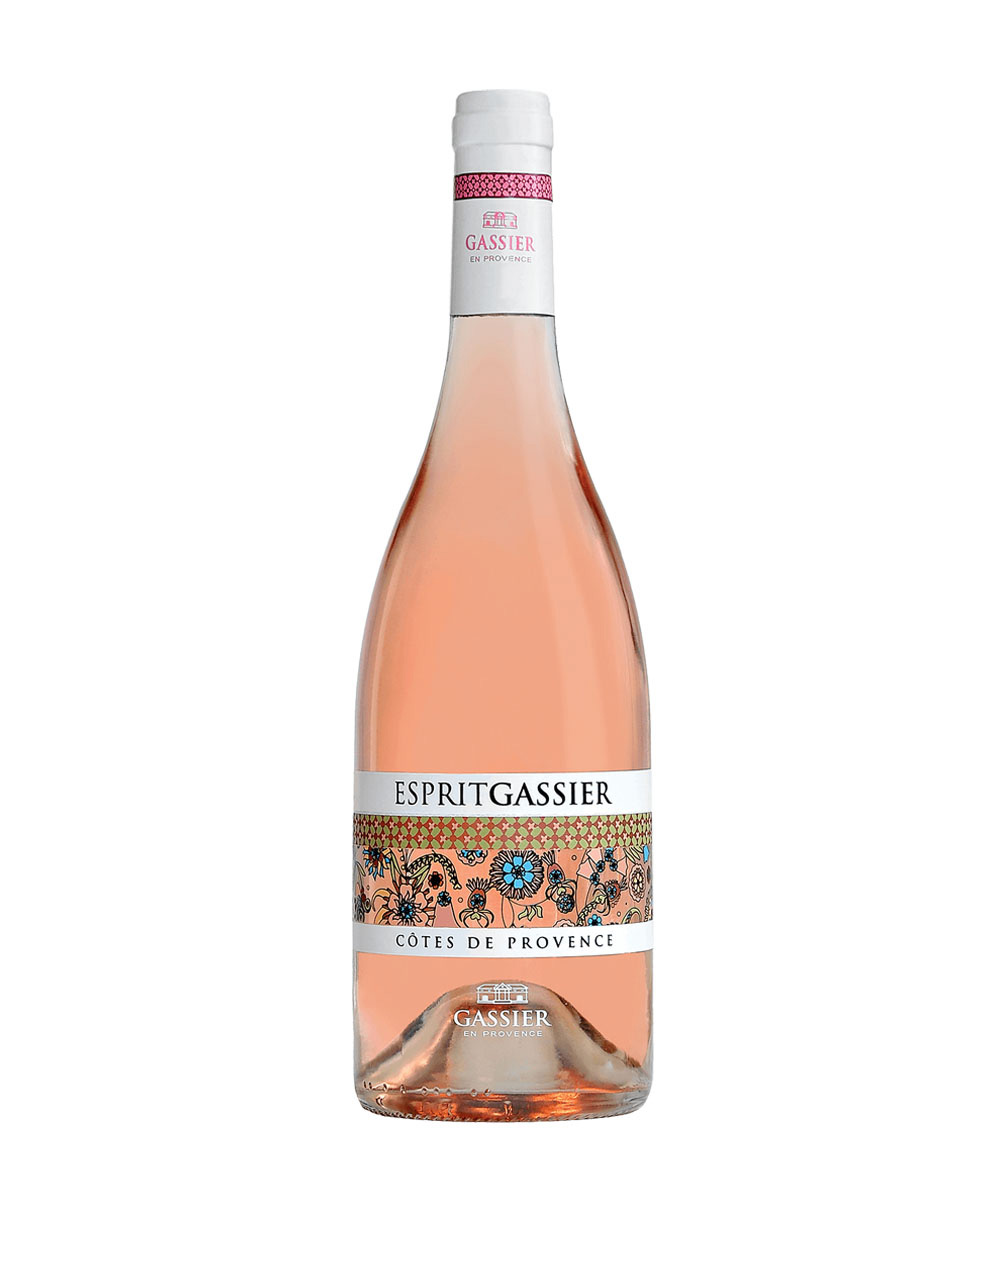 Esprit Gassier Cotes de Provence France Rose wine